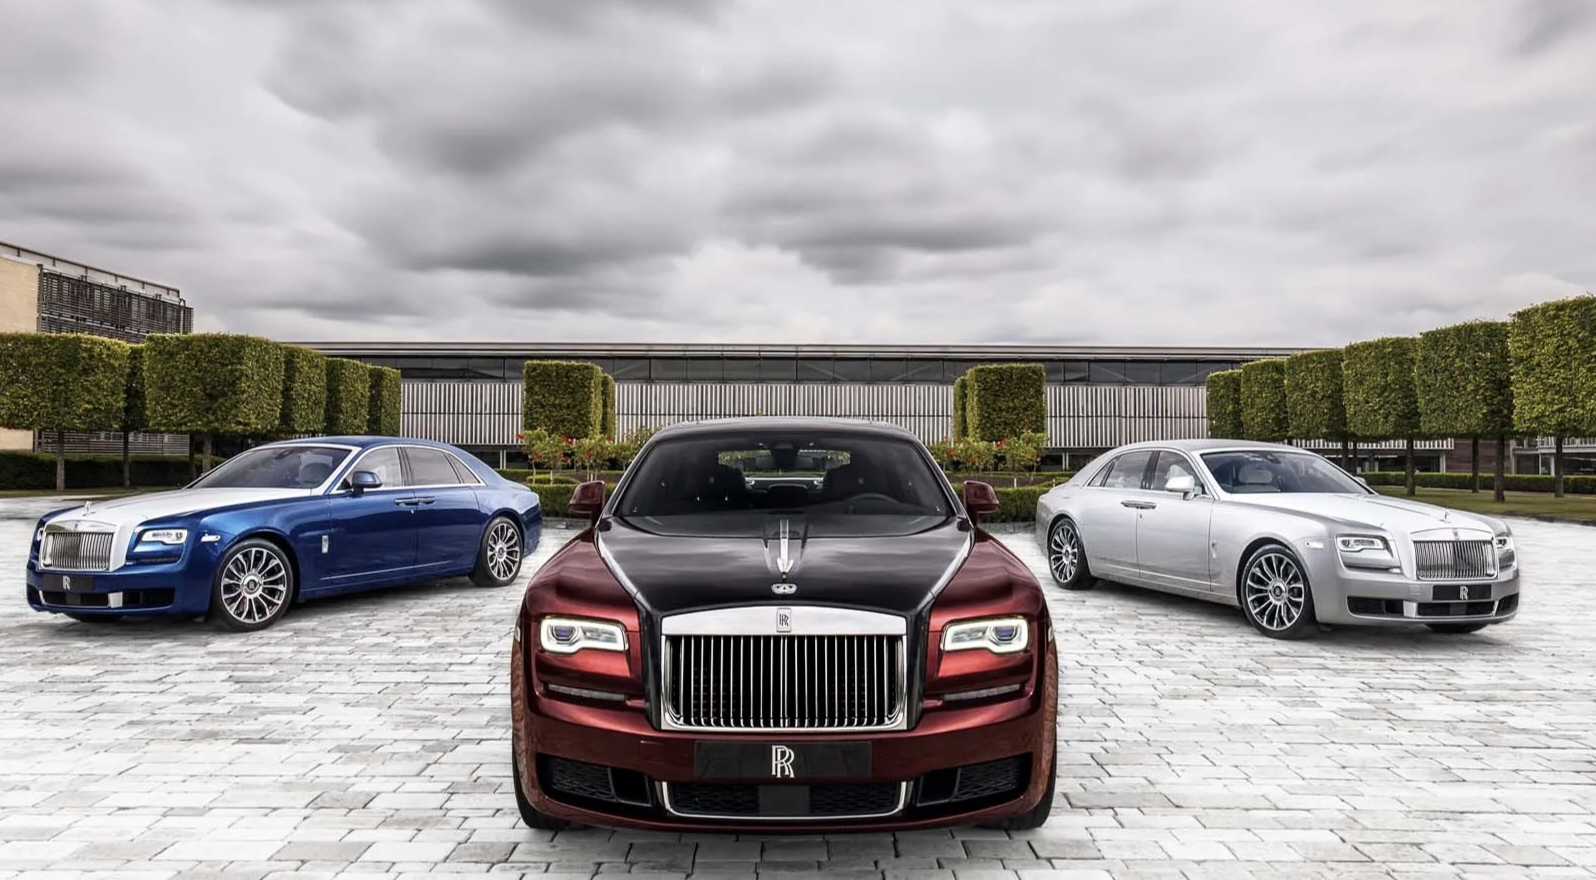 Rolls-Royce Phantom Mobil Super Sport Kecepatan Tinggi dan Fitur Hibrida Menawan Dihargai Rp 89.3 Miliar